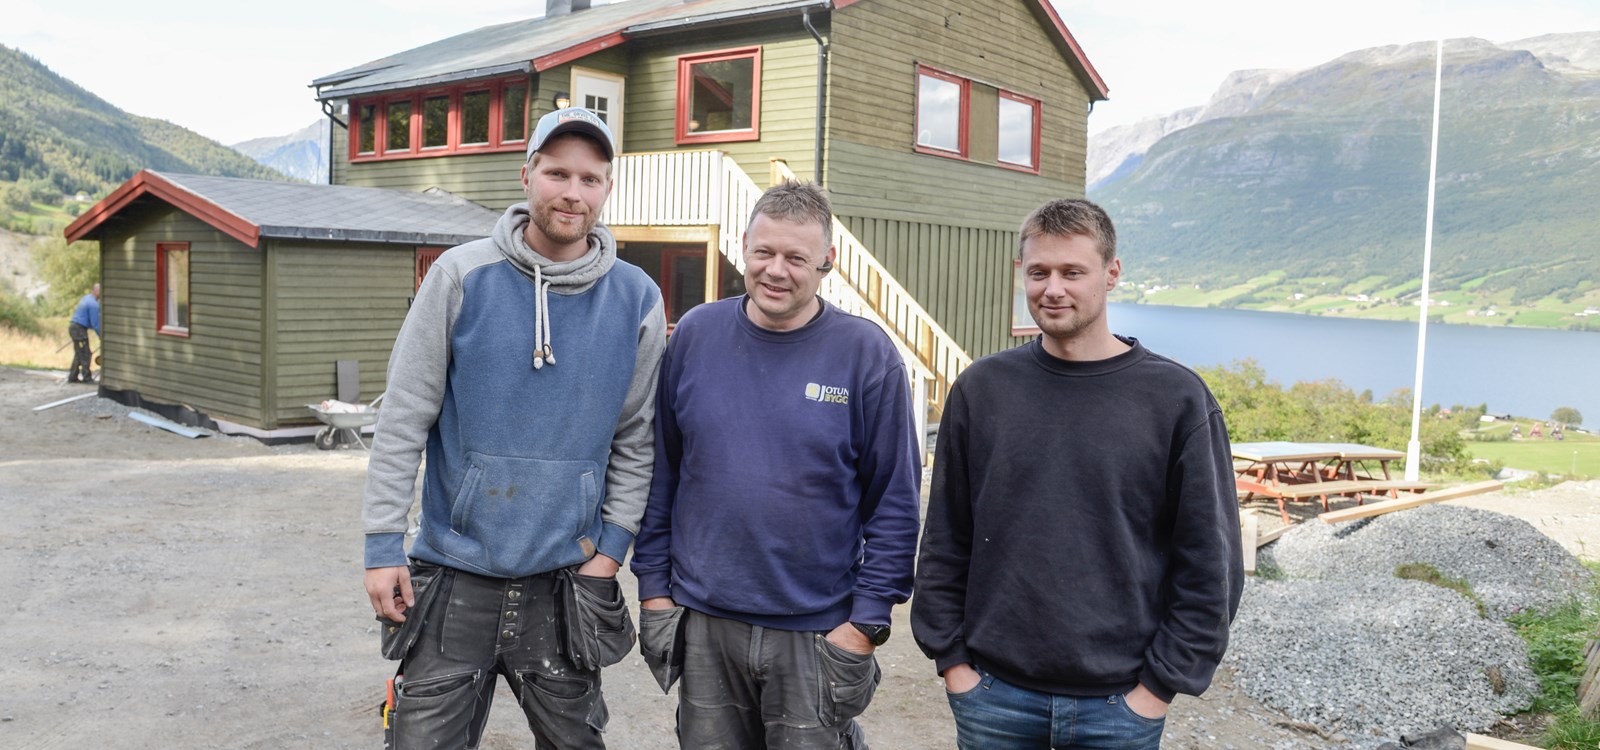 Frank Thune, Geir Morten Sveberg og Kenneth Holien Eltun har gått saman om eigedomsutvikling sentralt i Vang.